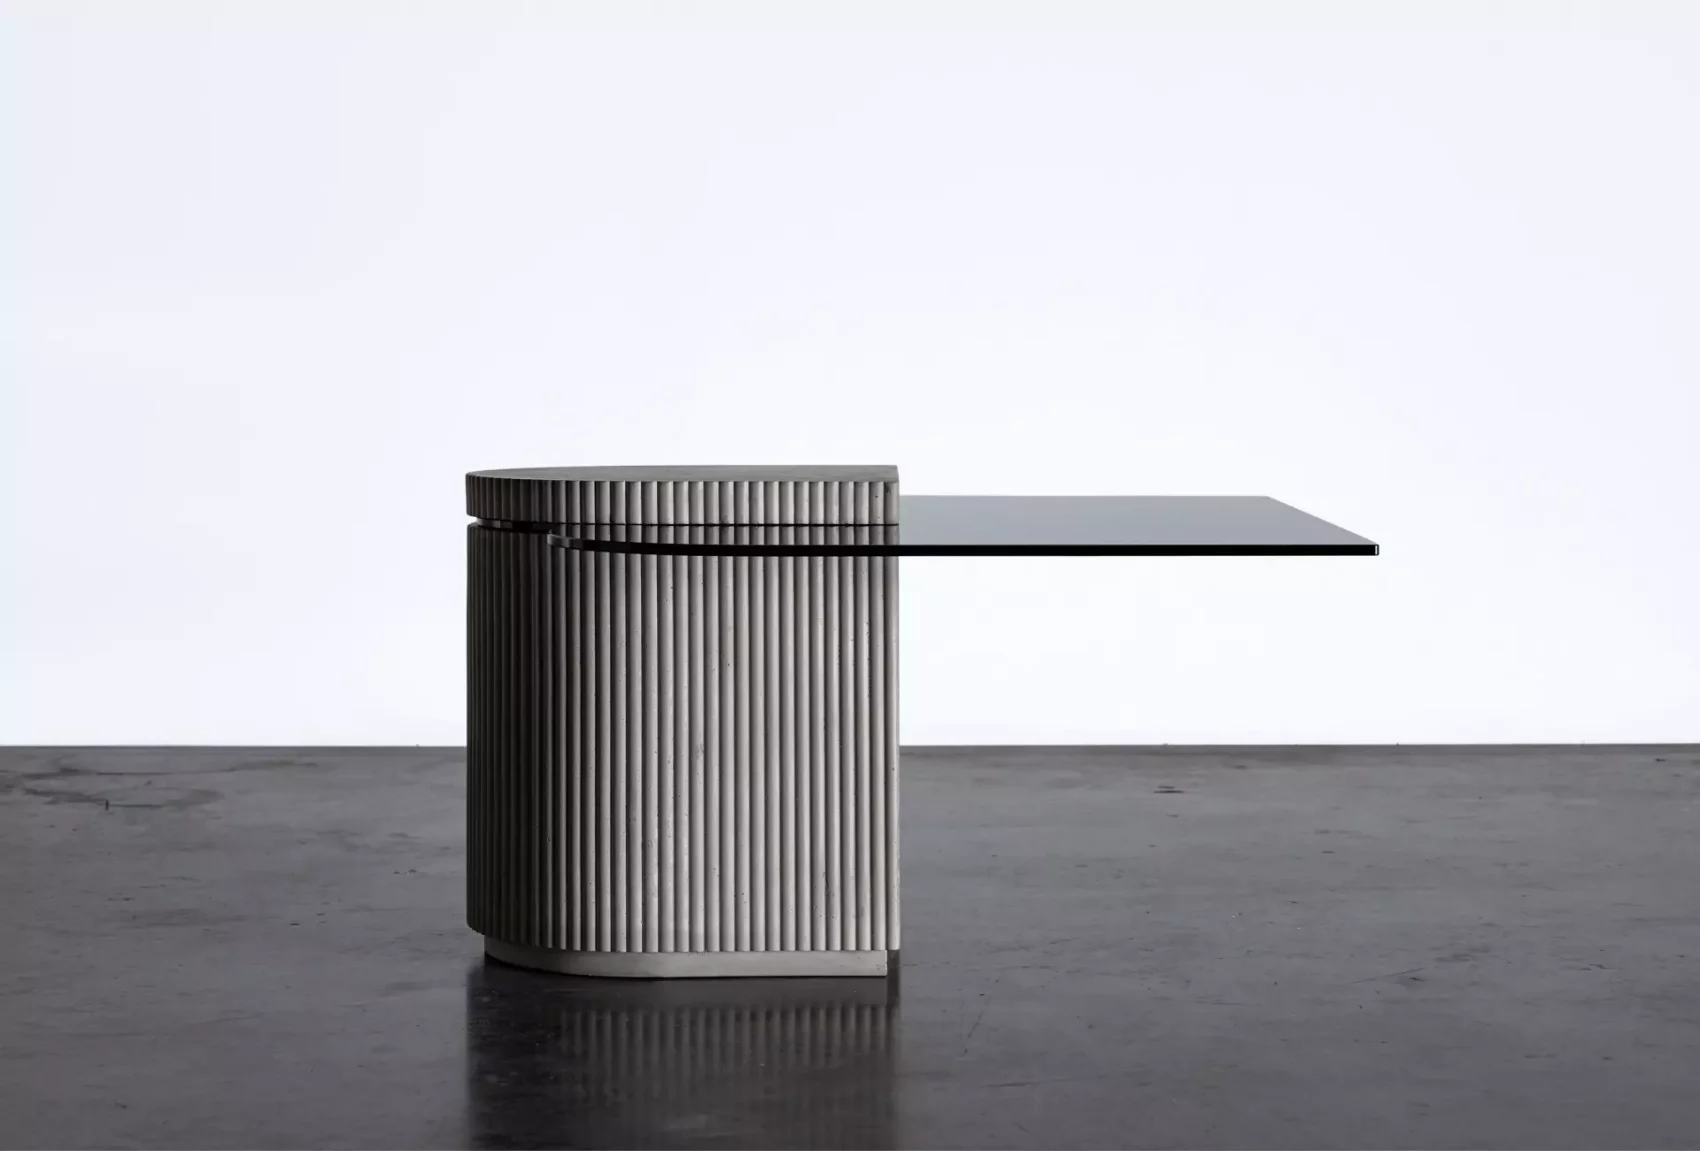 meuble en béton et verre hybride entre une table basse et une table d'appoint